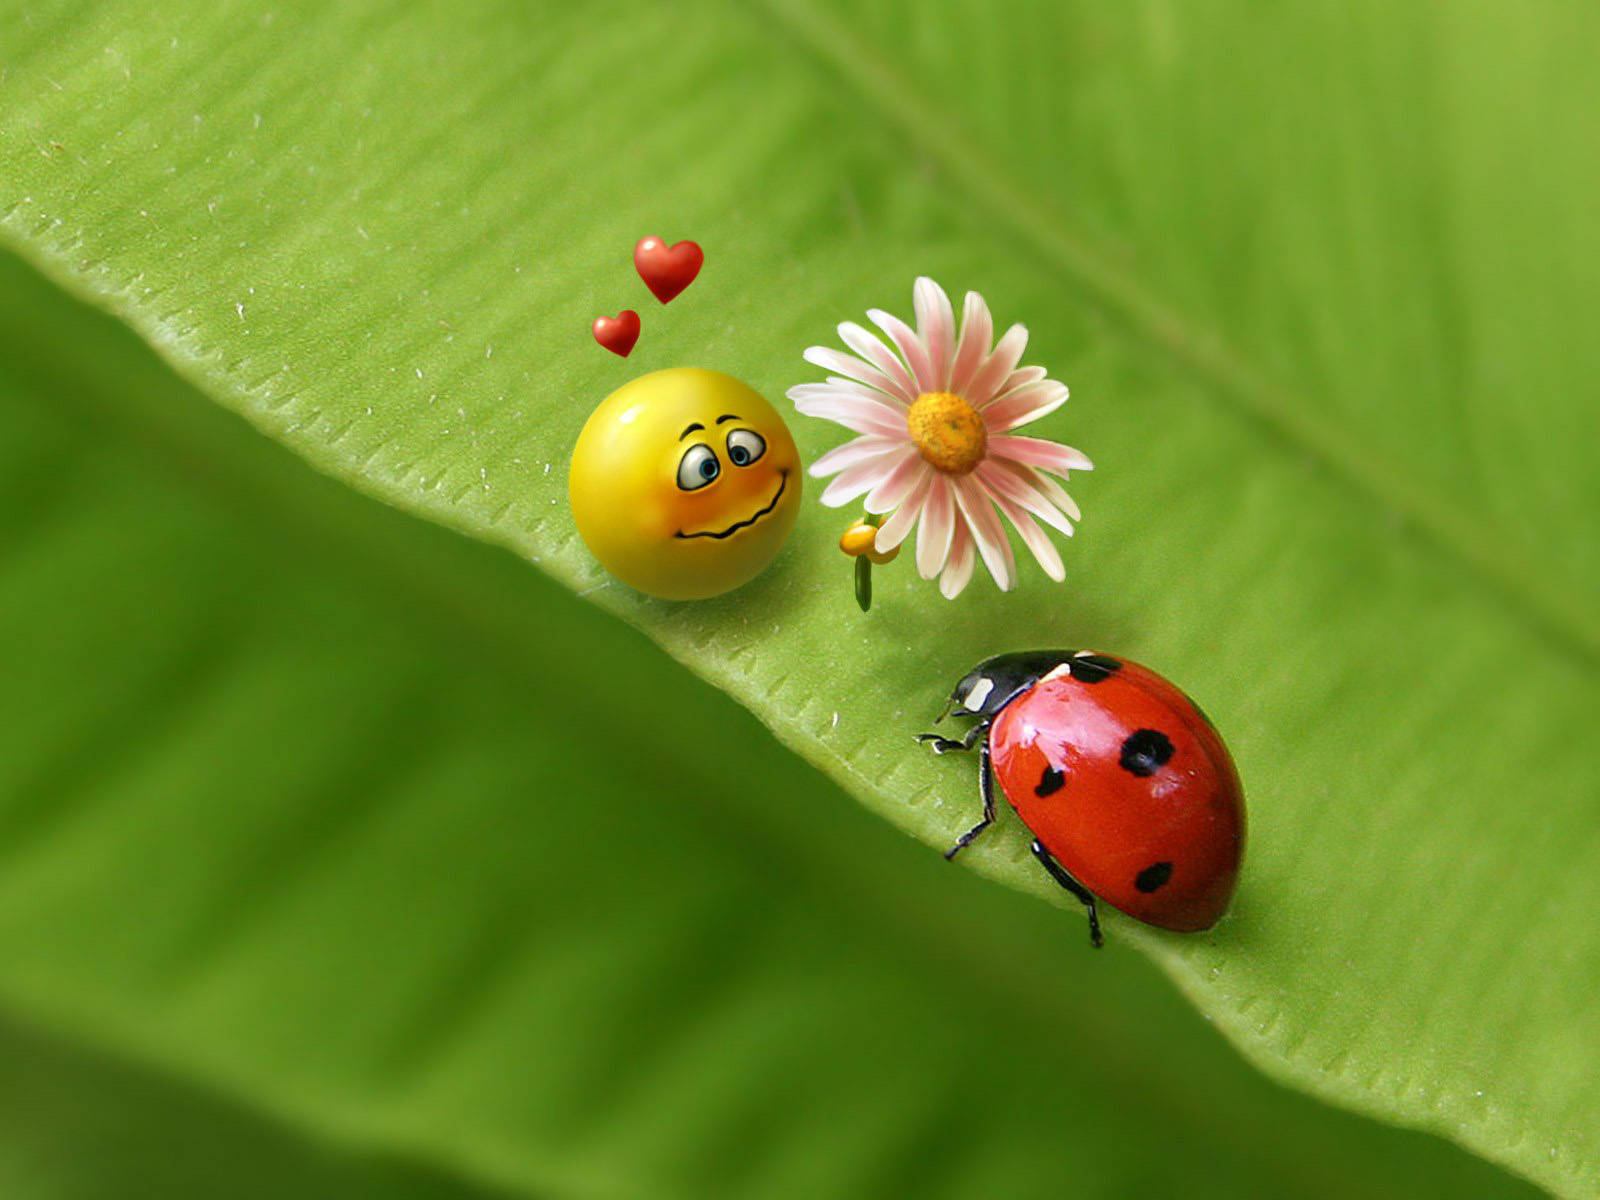 Ladybug And A Smiley Emoji